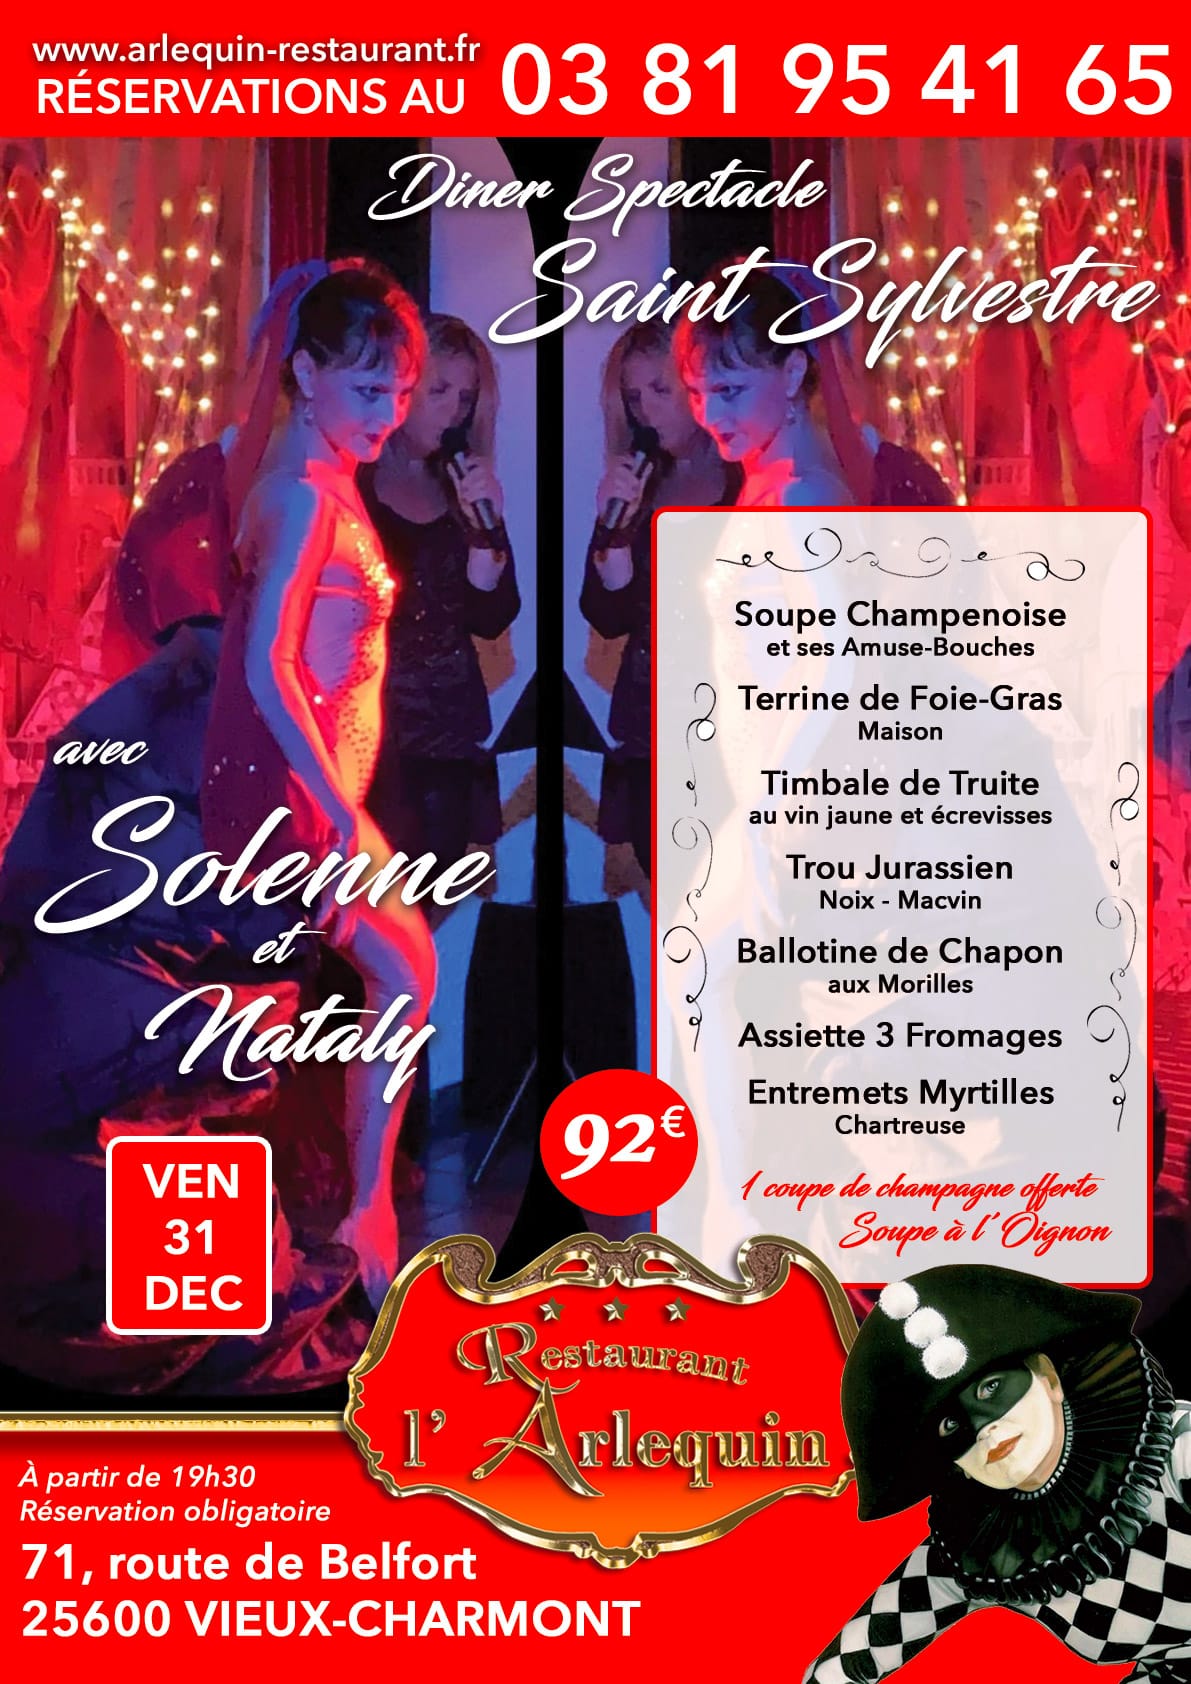 Réservez votre soirée de la Saint-Sylvestre à l'Arlequin entre Montbéliard et Belfort